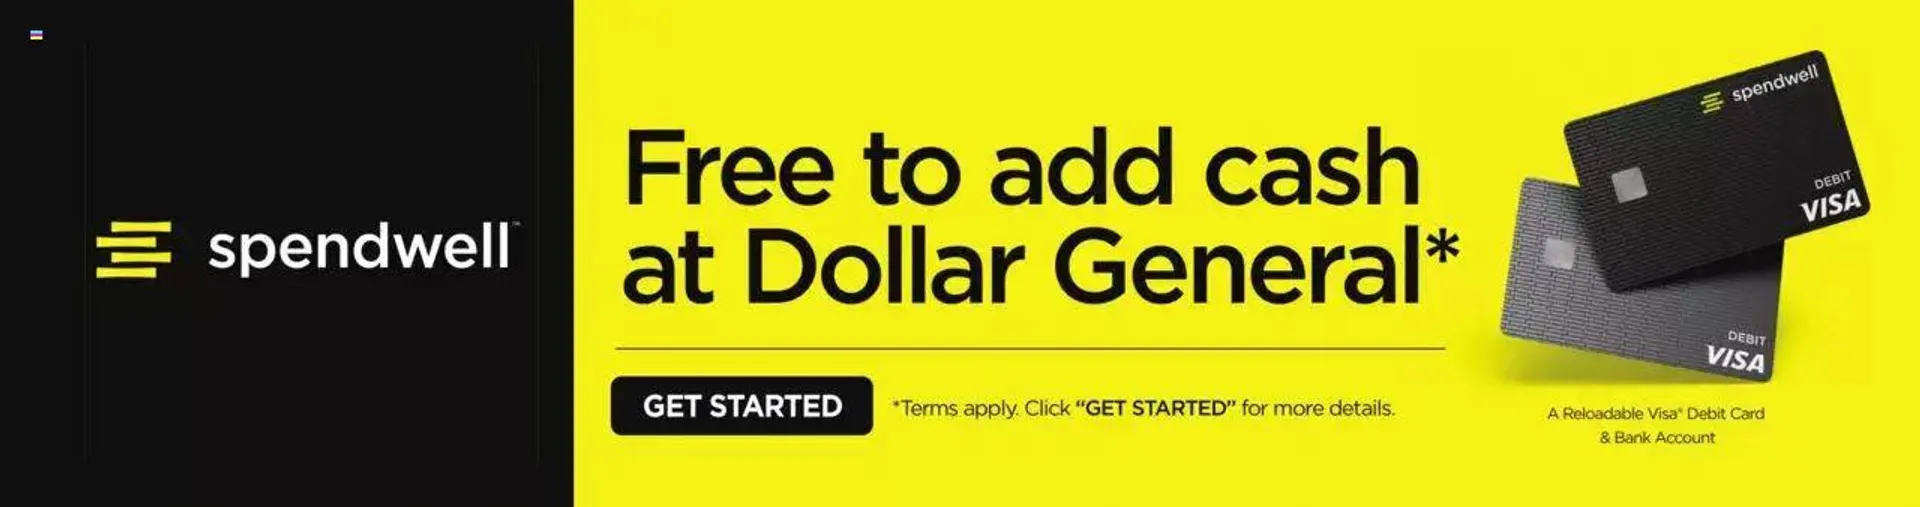 Dollar General - Weekly Ad - TX - 14